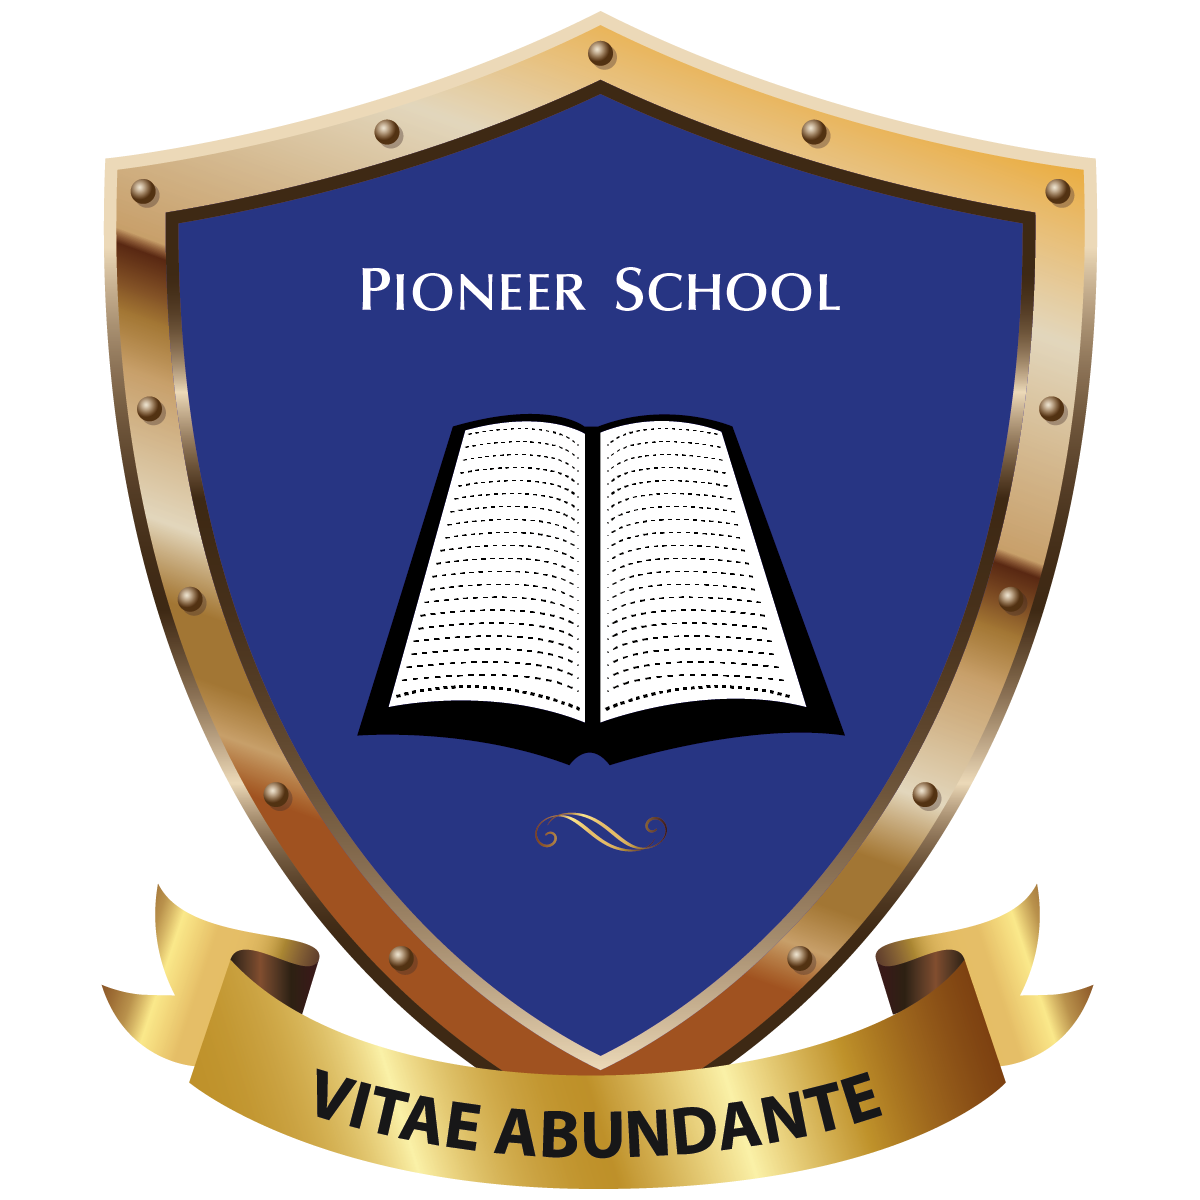 PIONEER SCHOOL